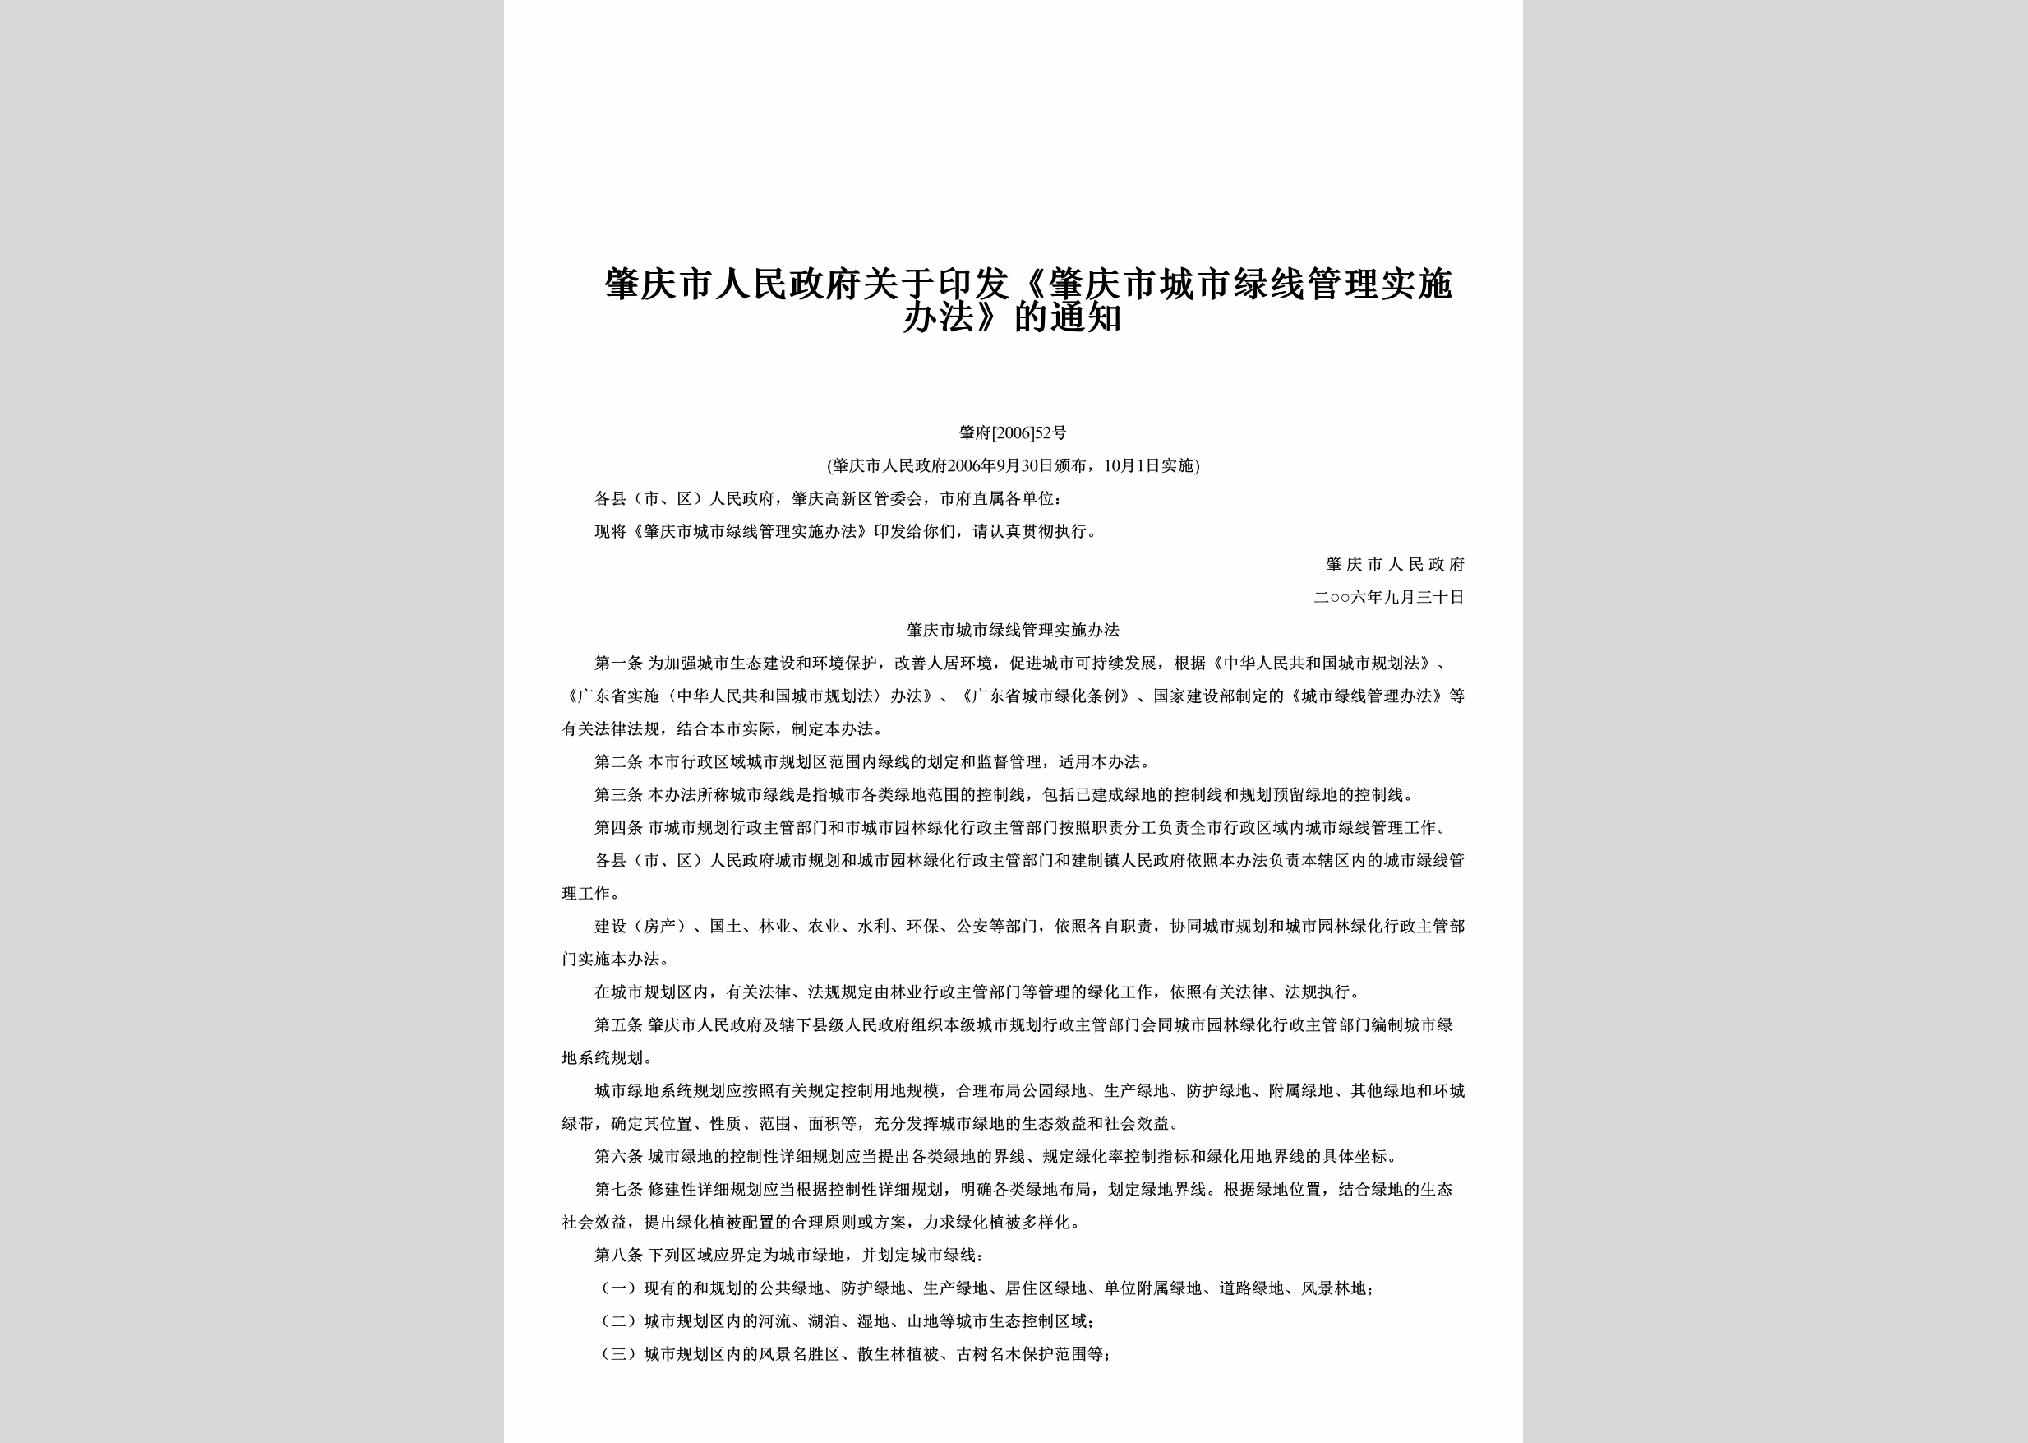 肇府[2006]52号：关于印发《肇庆市城市绿线管理实施办法》的通知